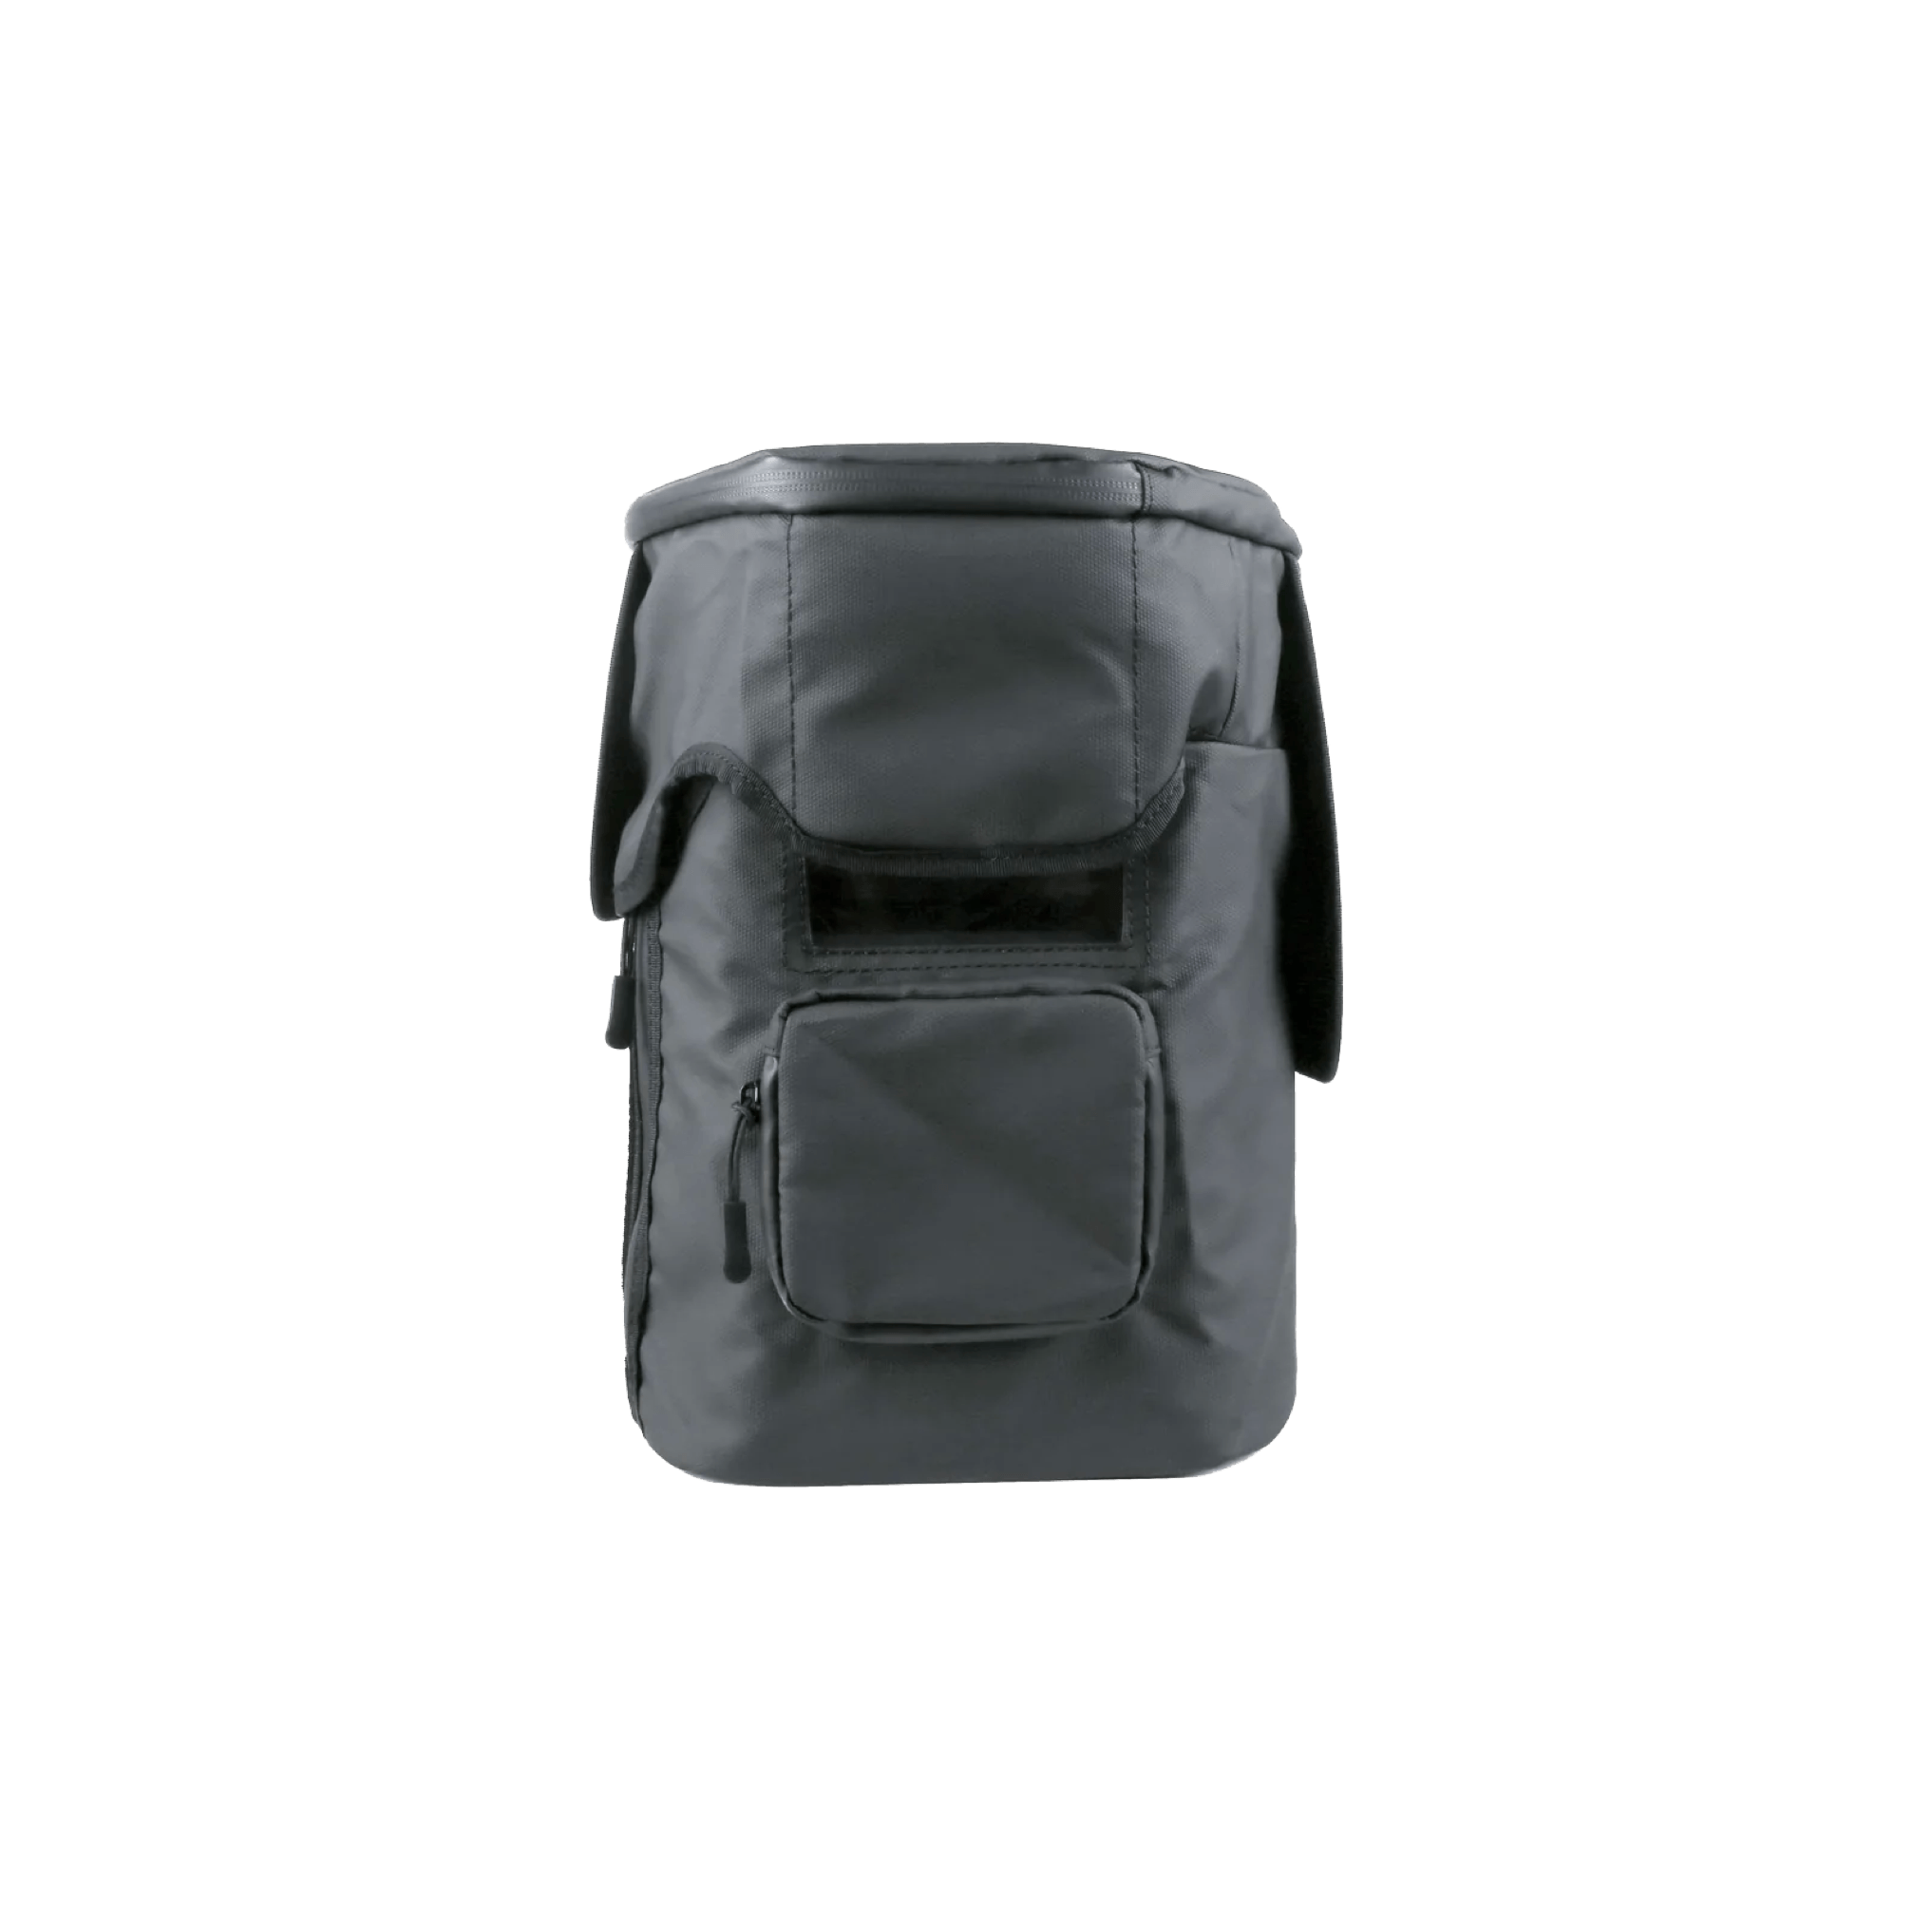 EcoFlow DELTA 2 Waterproof Bag | EcoFlow